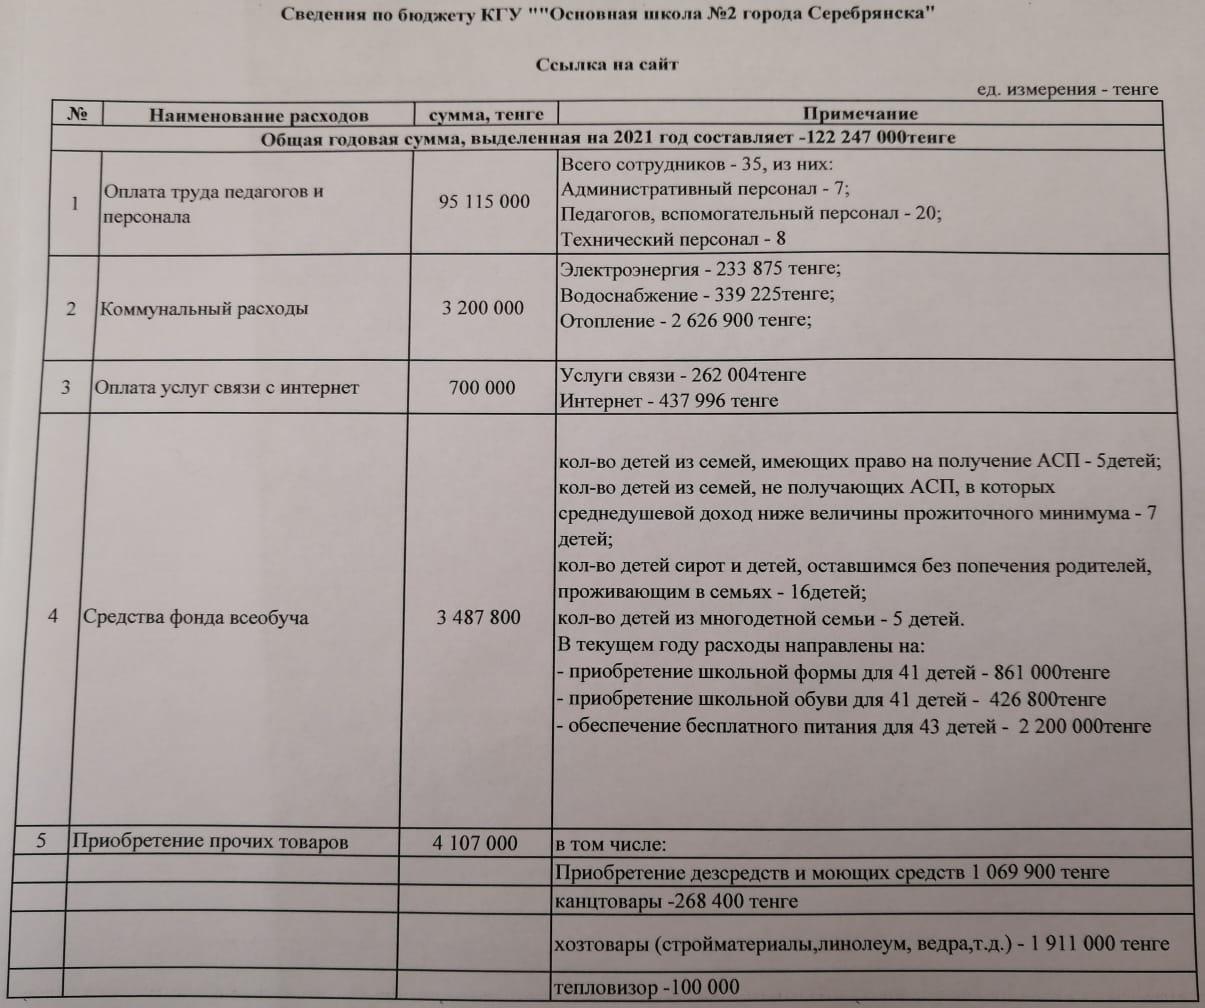 Сведения по бюджету КГУ ""Основная школа №2 города Серебрянска"